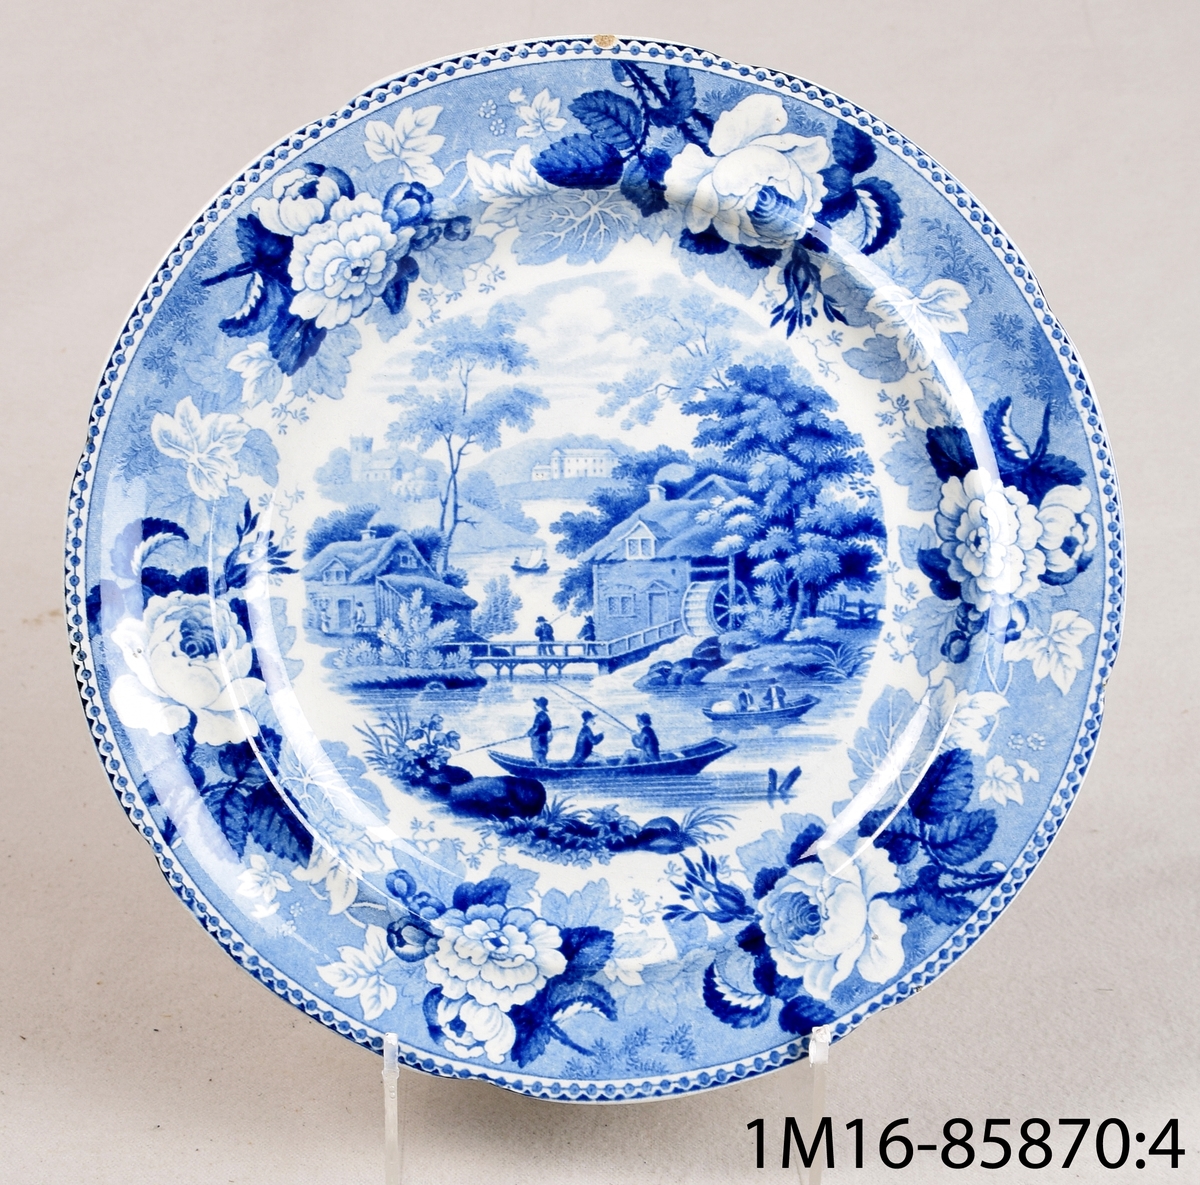 Vit rund tallrik av flintgods med tryckt blå dekor. Dekornamn: 1828 års landskapsmönster. Tillverkare: Rörstrand